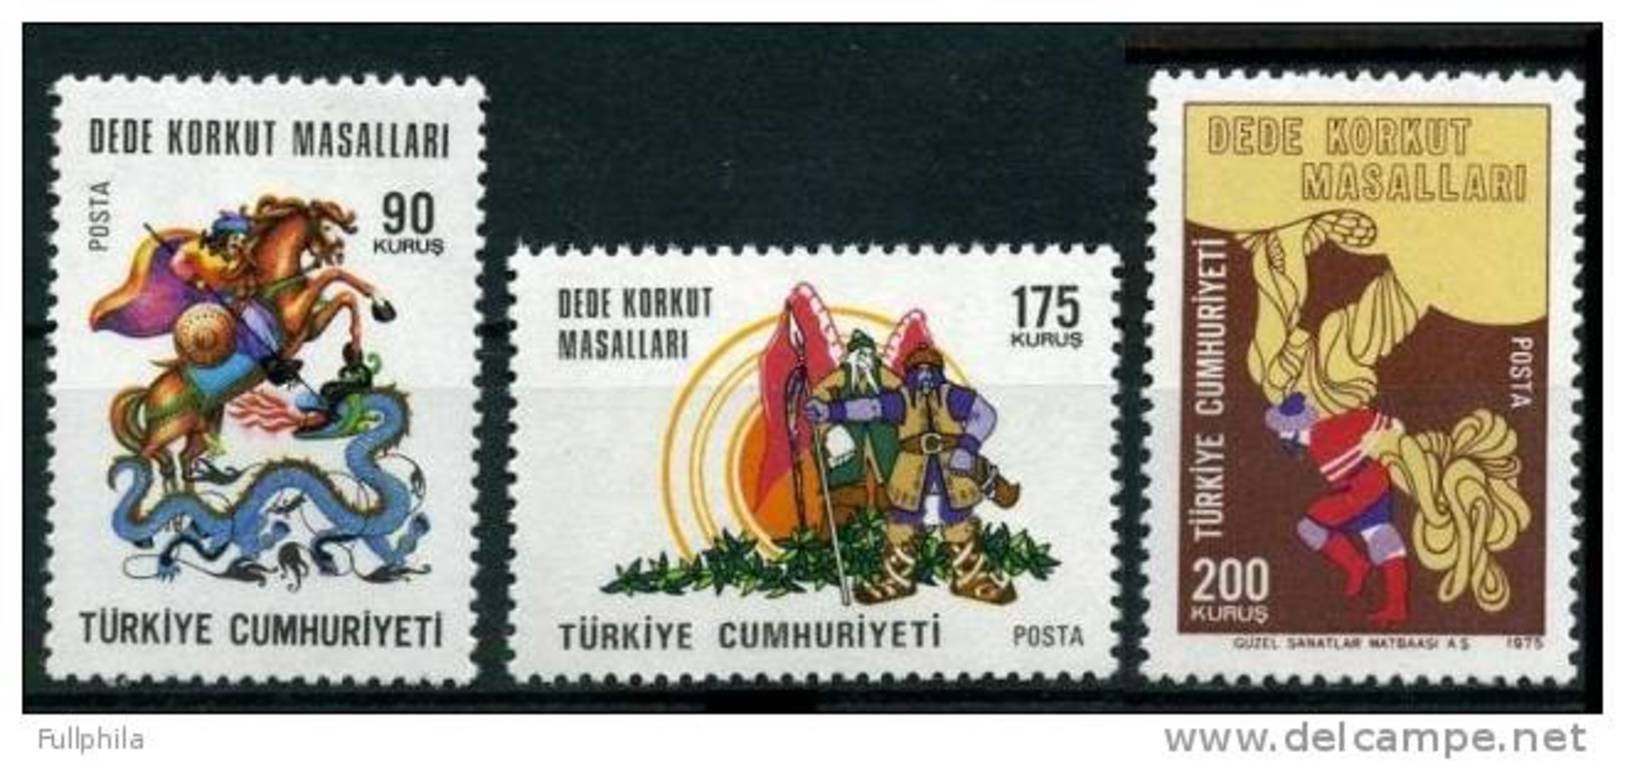 1975 TURKEY TALES OF DEDE KORKUT MNH ** - Ungebraucht